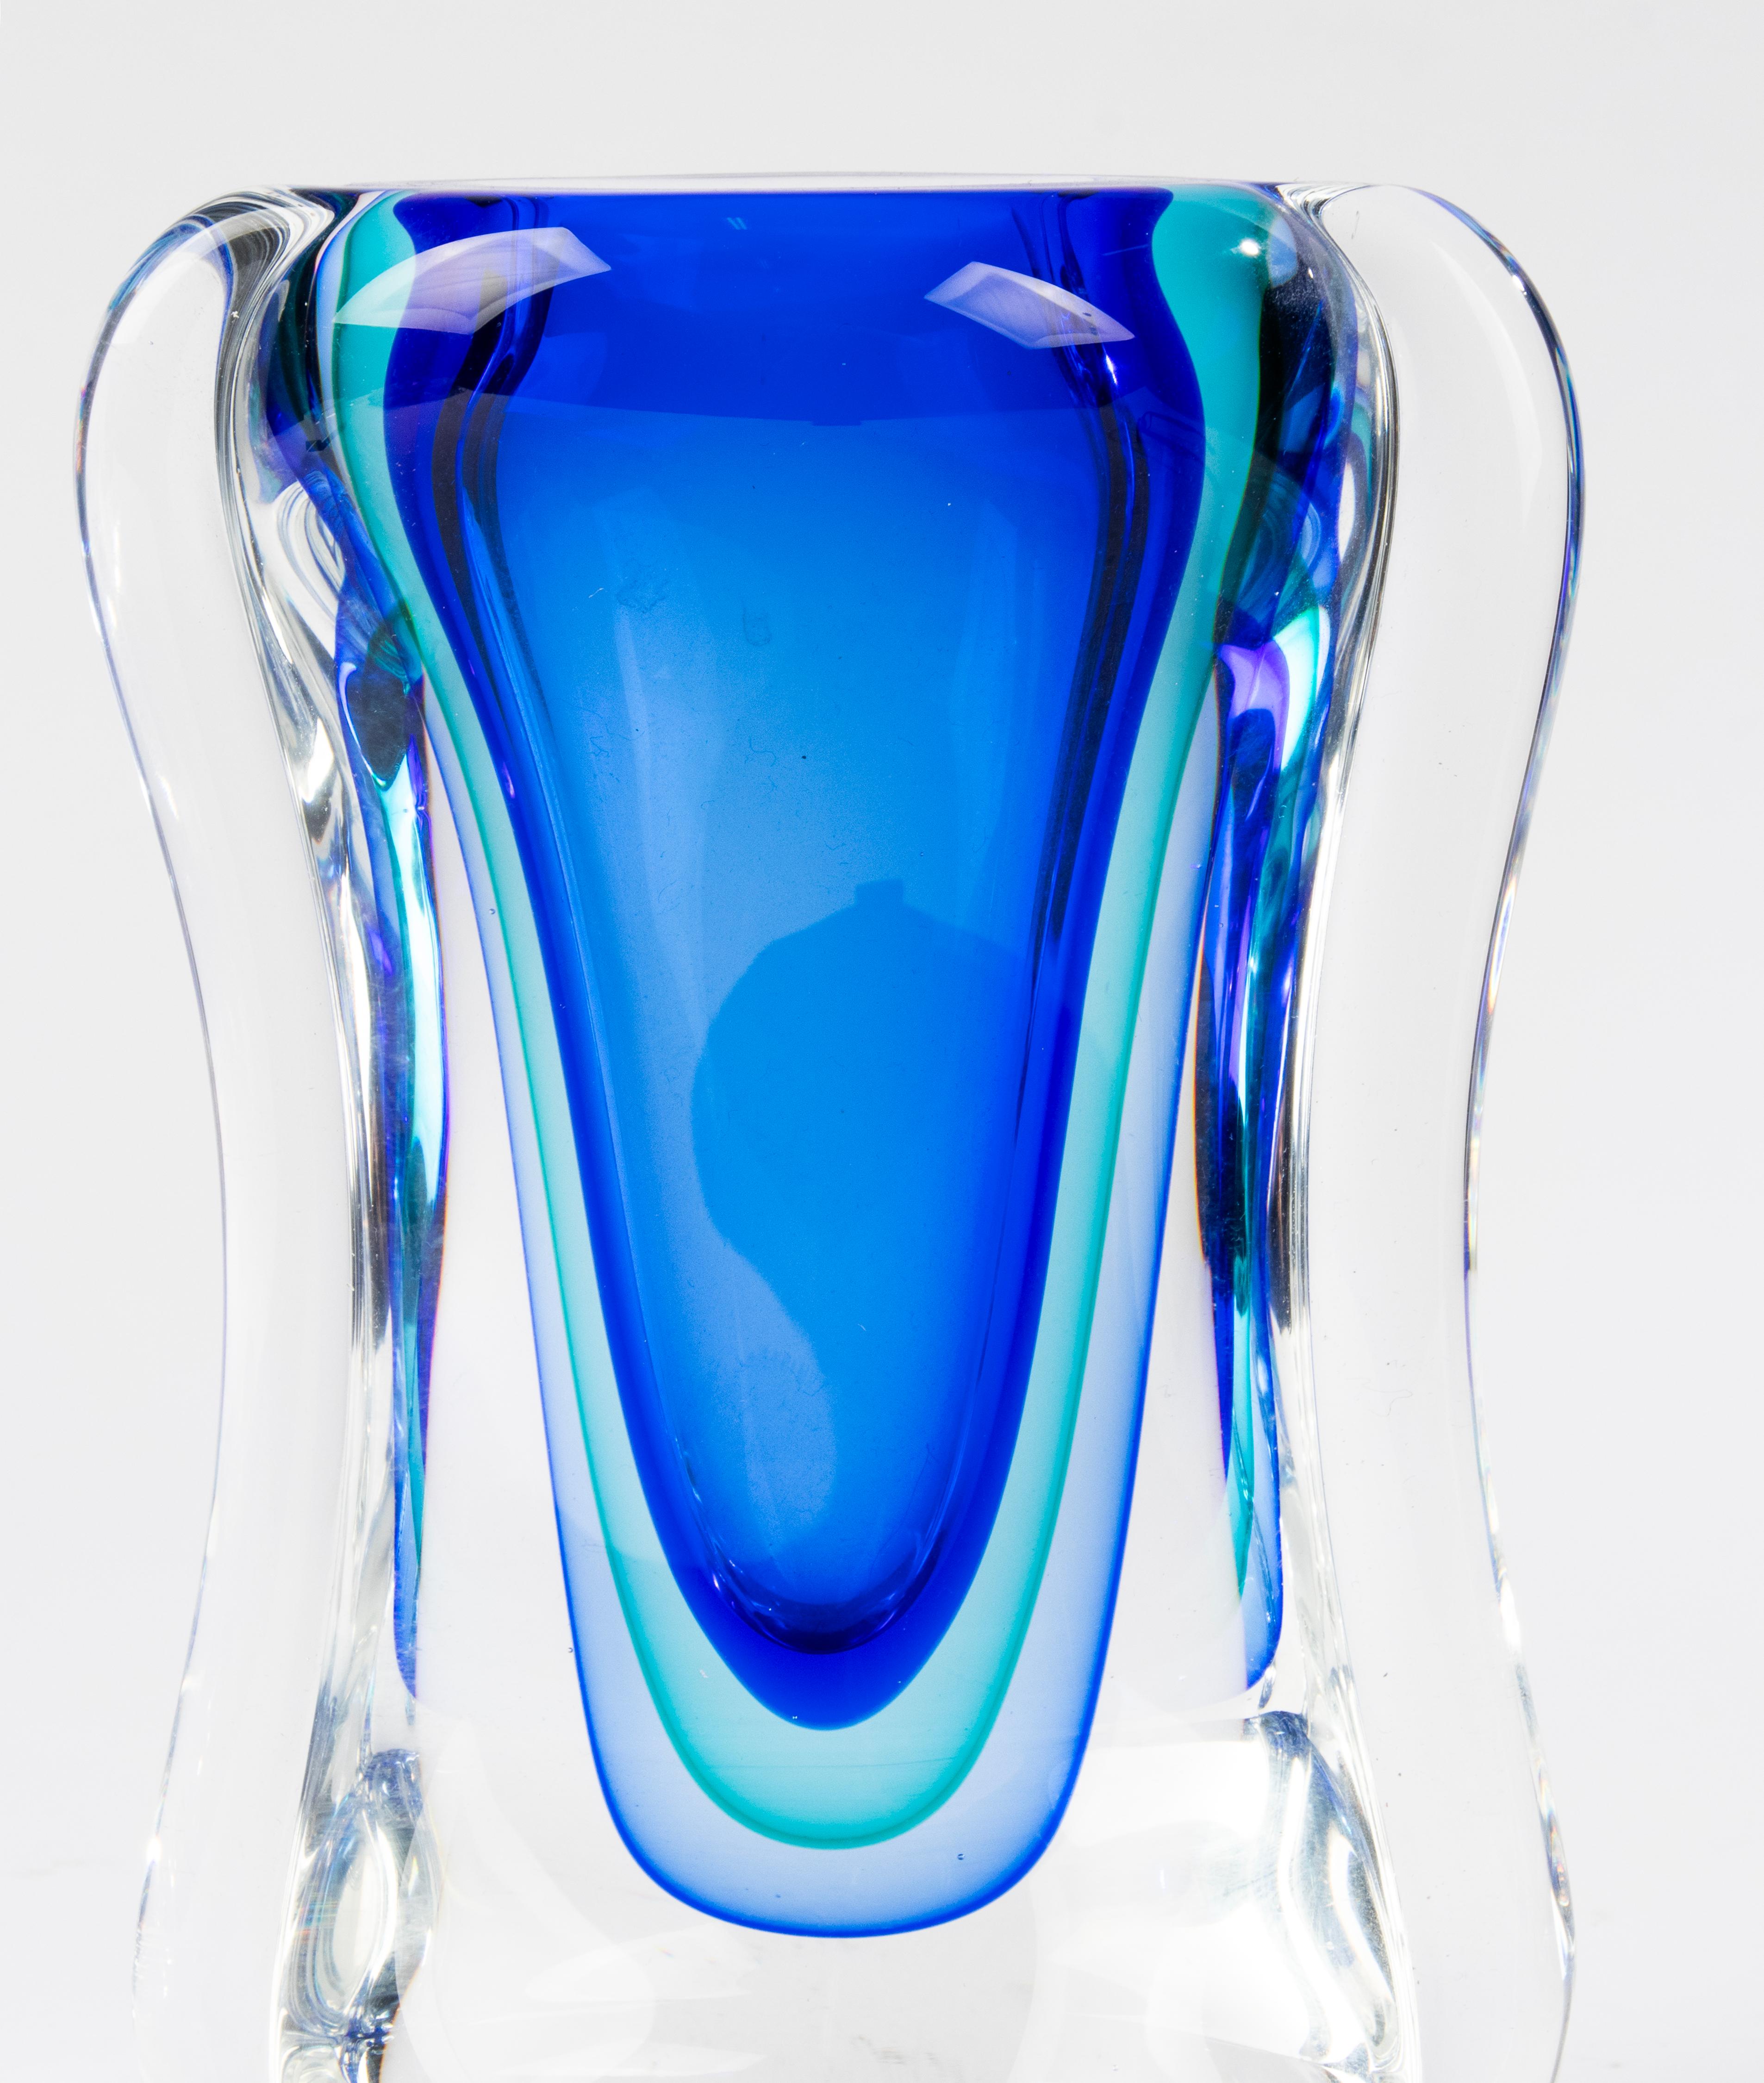 Eine schöne große Vase aus Murano-Glas, die dem italienischen Designer Alfredo Barbini zugeschrieben wird. 
Die Vase ist in sehr gutem Zustand, keine Chips und keine Feta-Bisse. 
Schöne Farbverläufe. 
Schwer und dickwandig.

Abmessungen: 15 x 7 cm